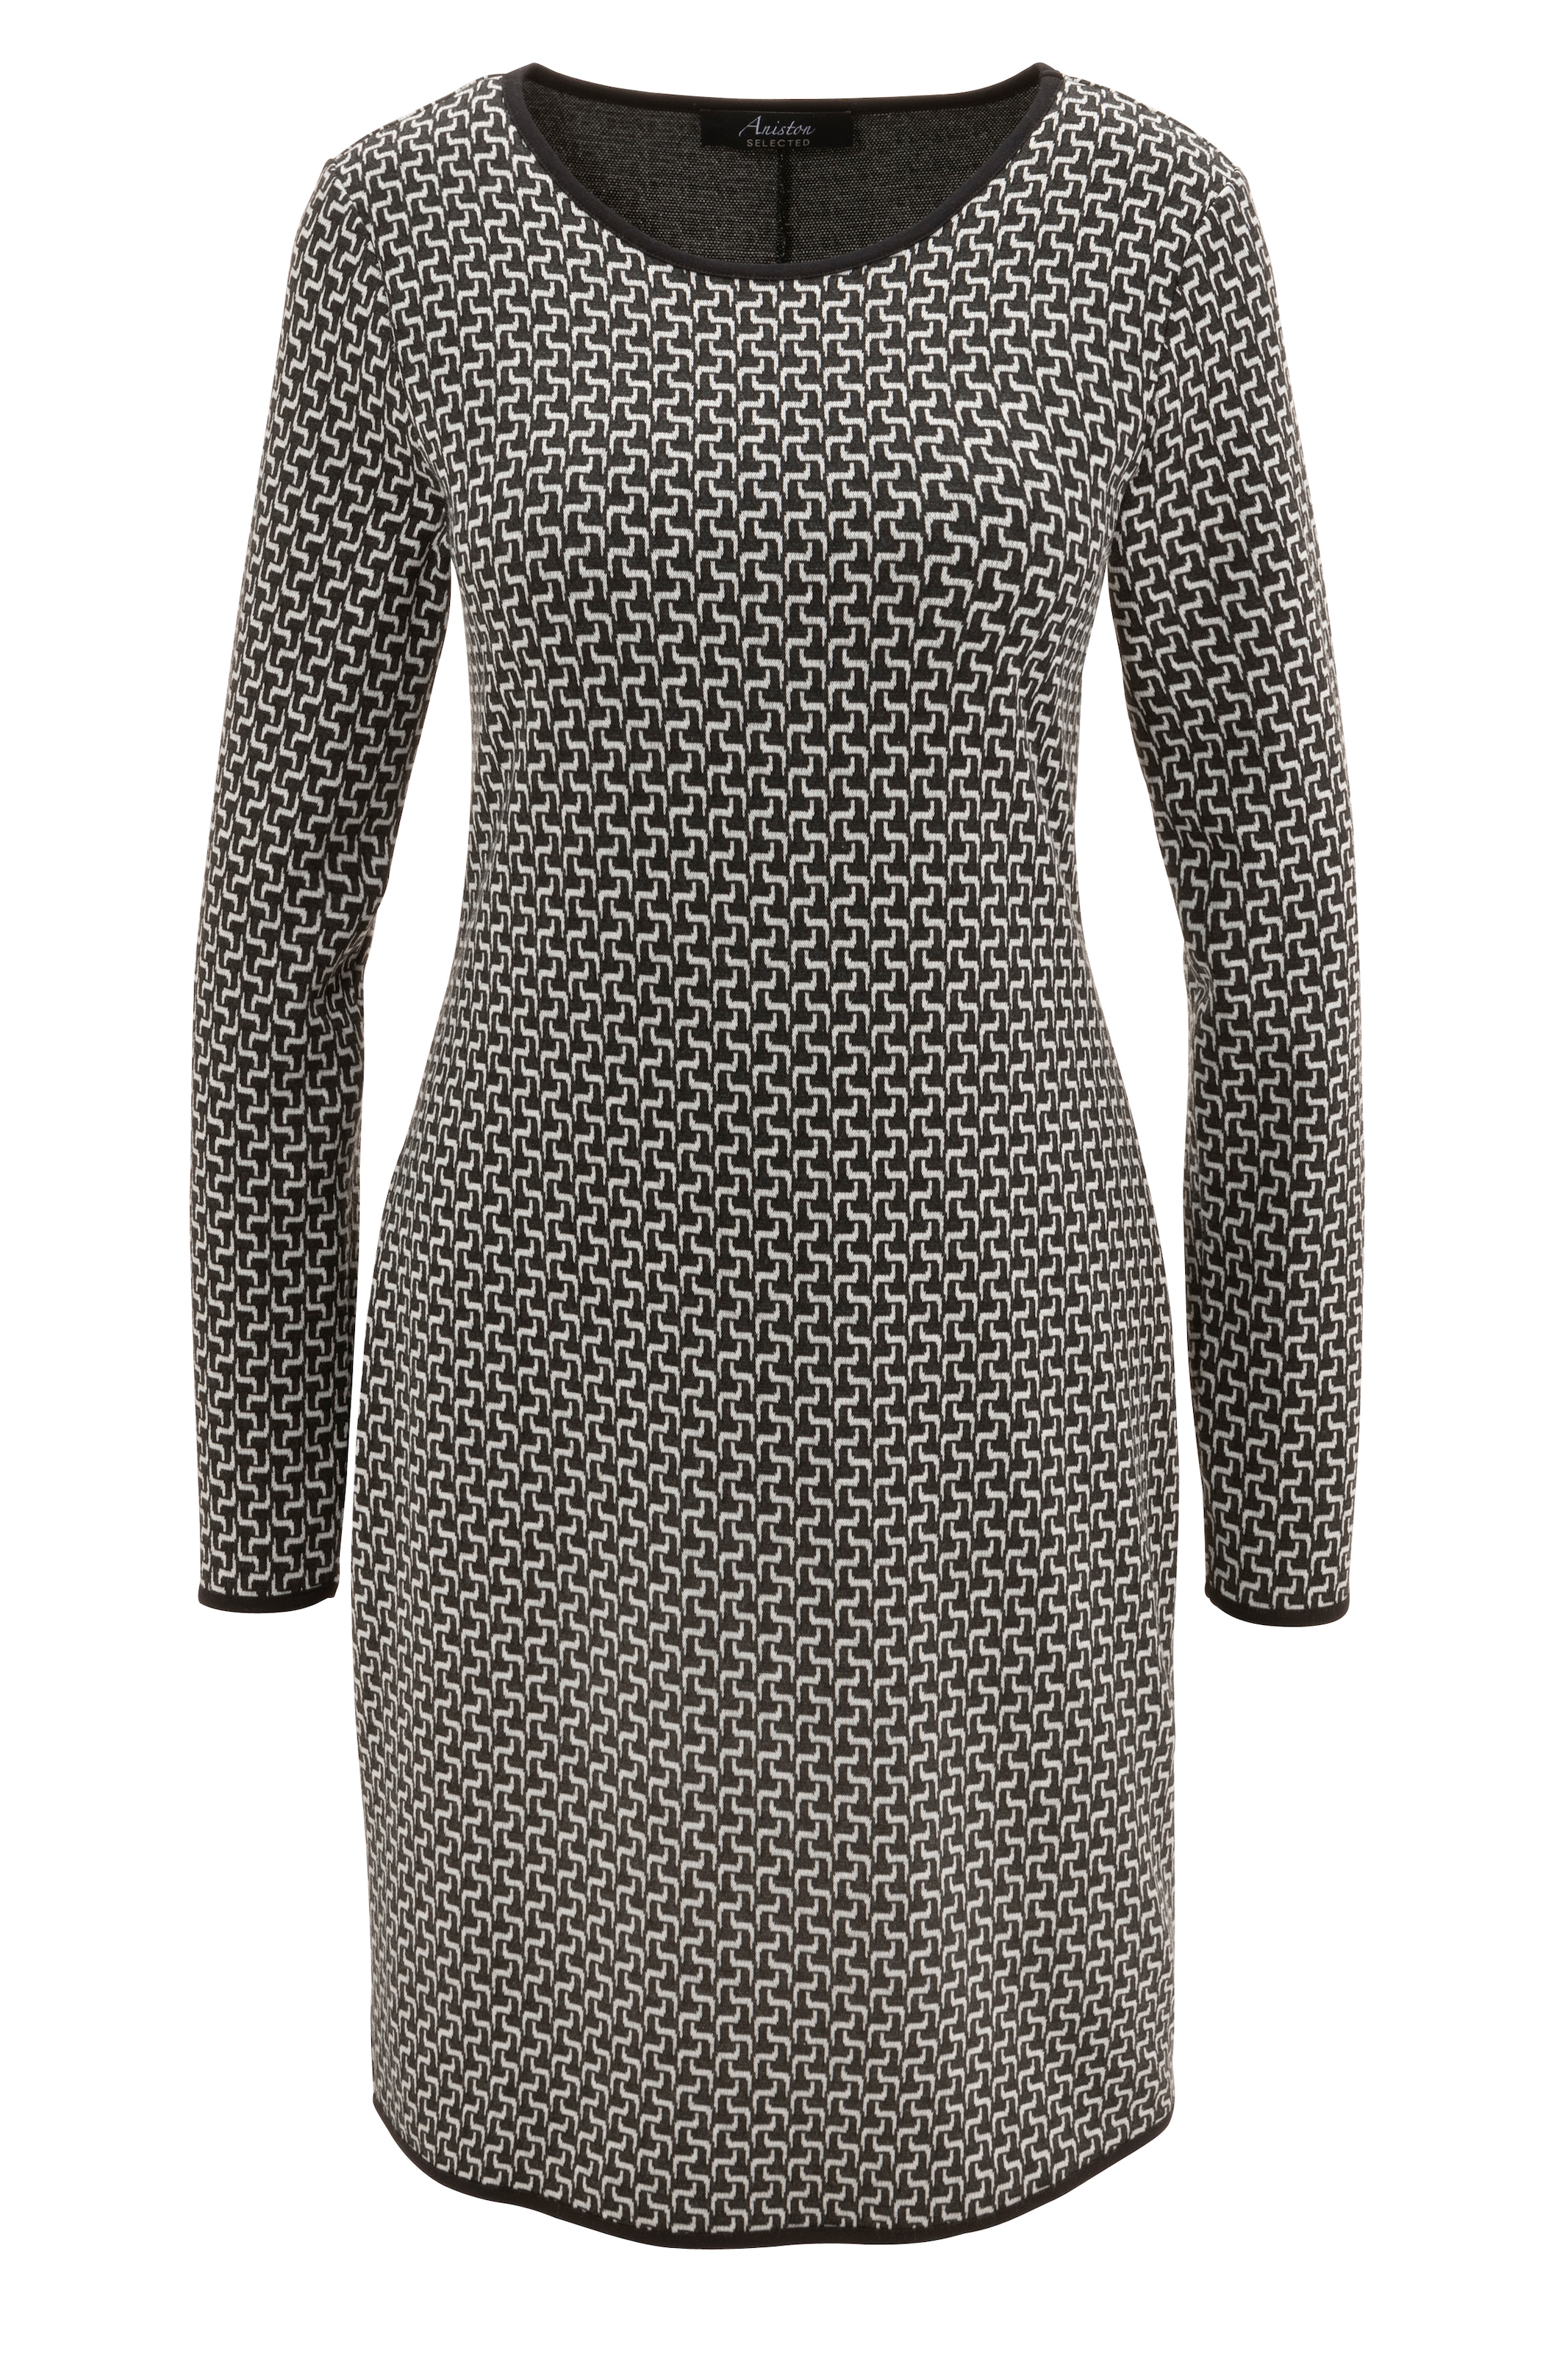 NEUE Abschlüssen | bestellen - Allover-Muster KOLLEKTION BAUR Jerseykleid, SELECTED schwarzen und mit Aniston